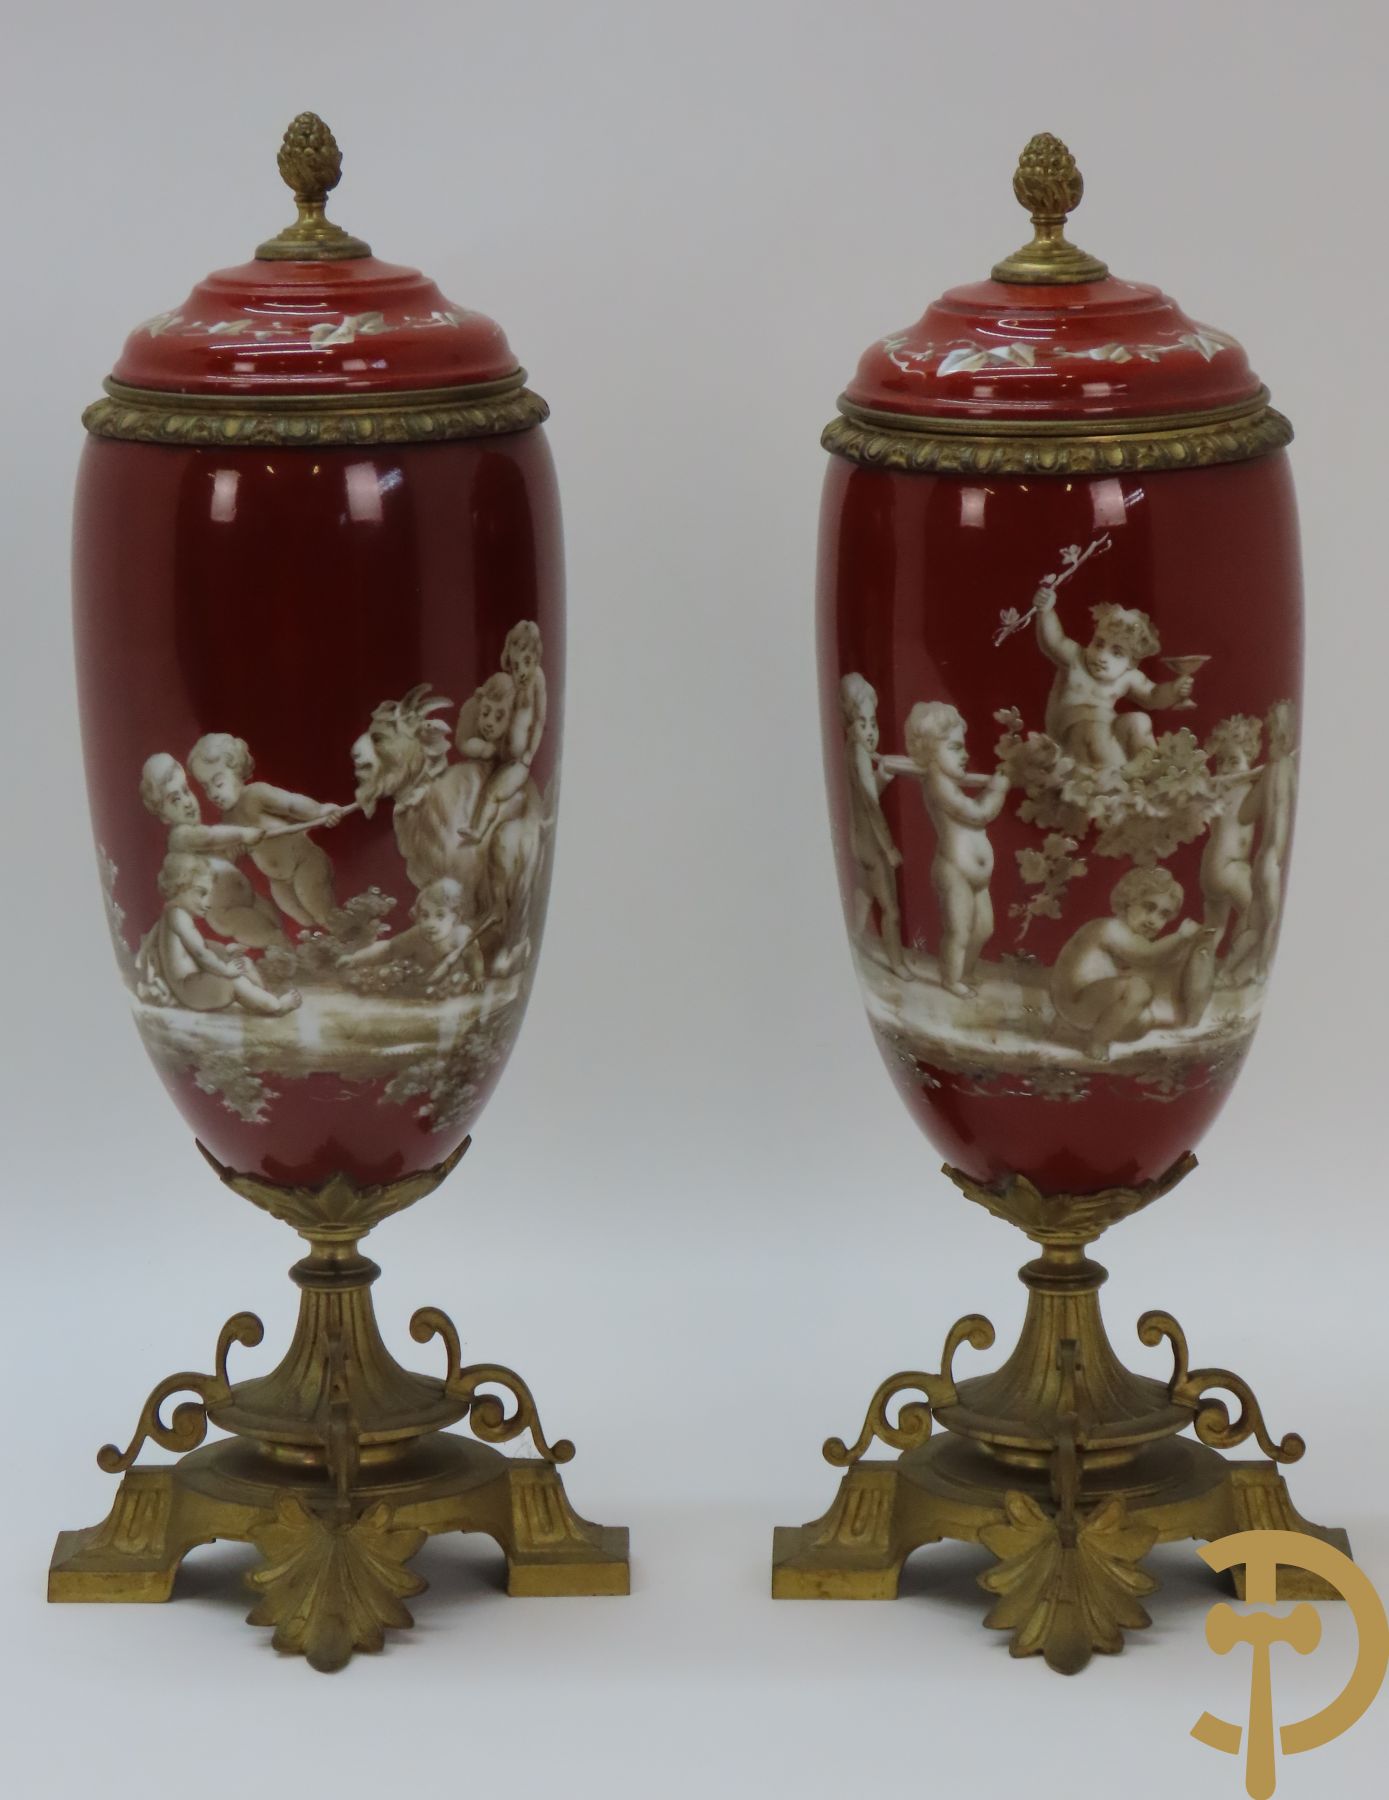 Paar porseleinen cassolettes met decor van geit en cupido